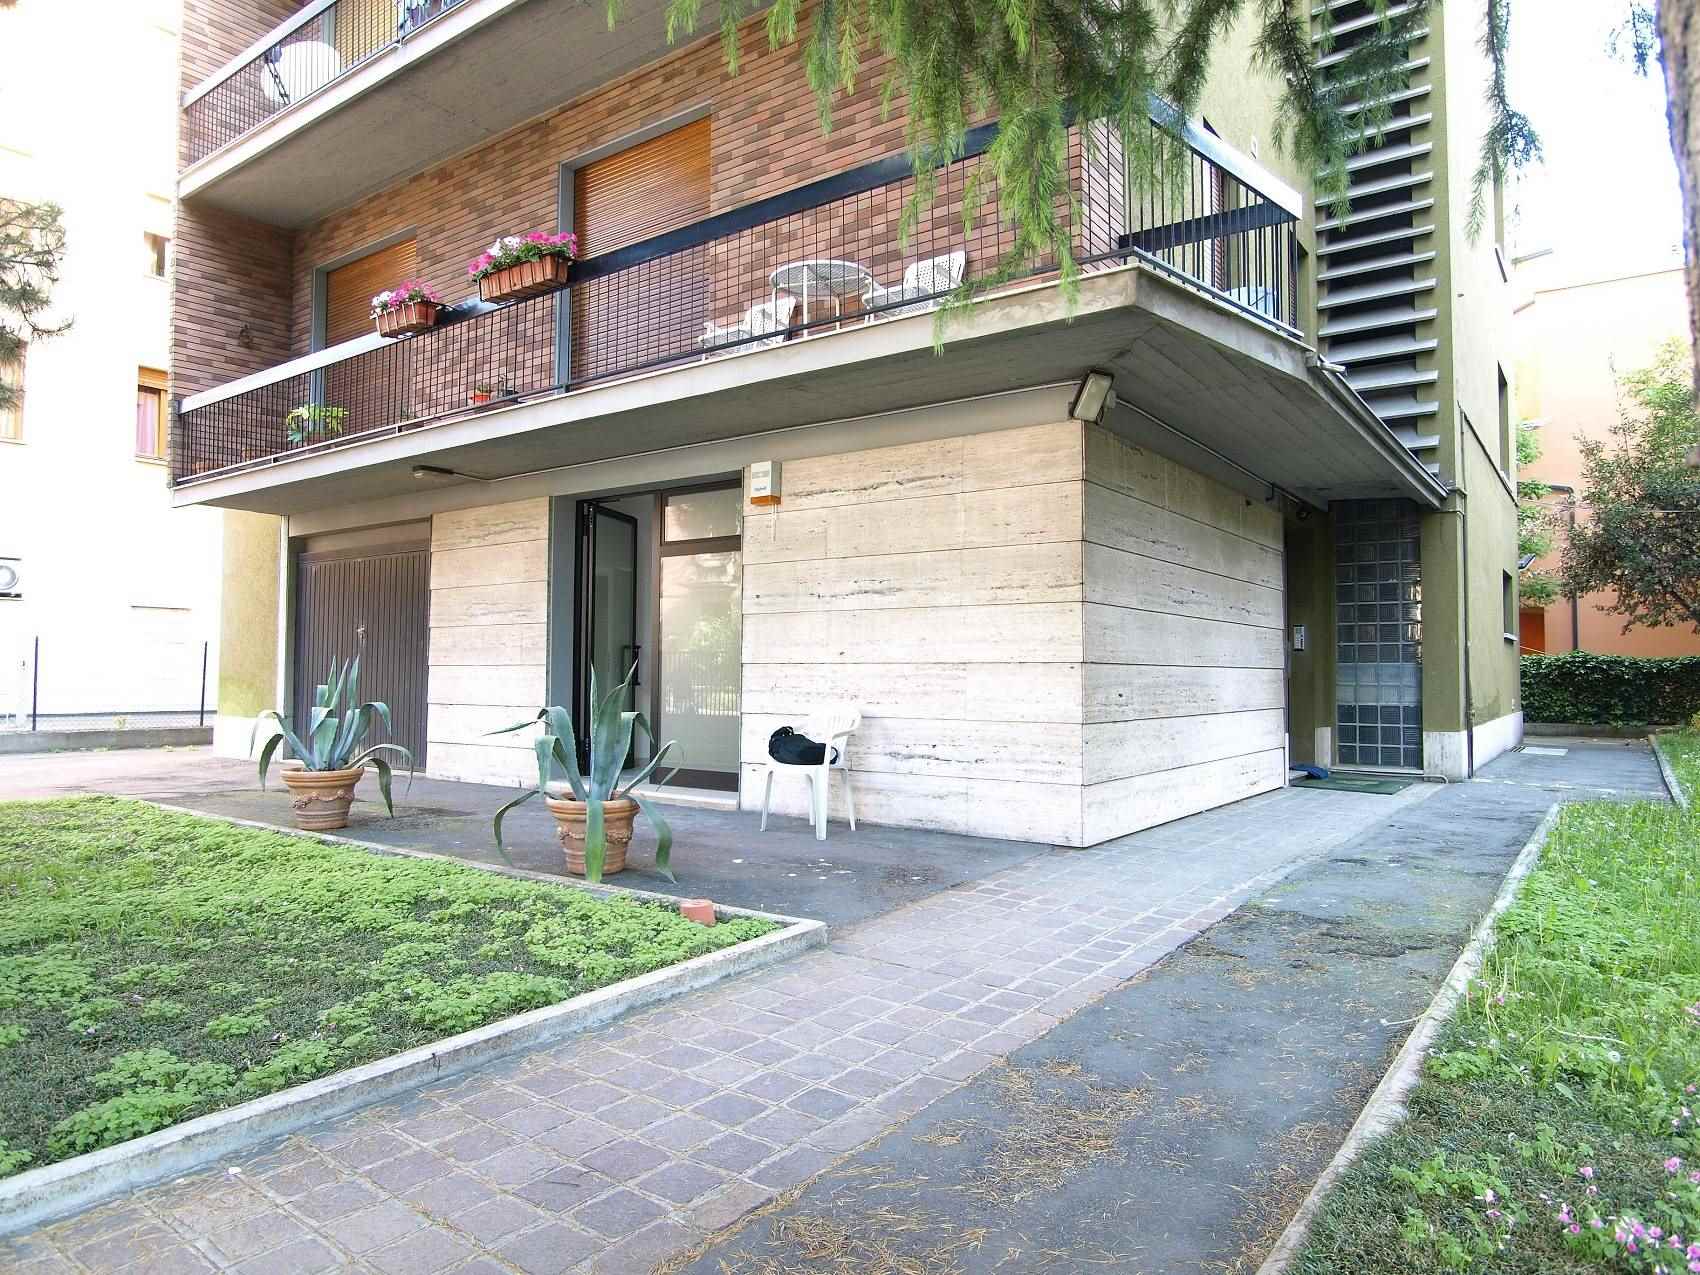 Ufficio / Studio in vendita a Vignola, 3 locali, prezzo € 145.000 | CambioCasa.it